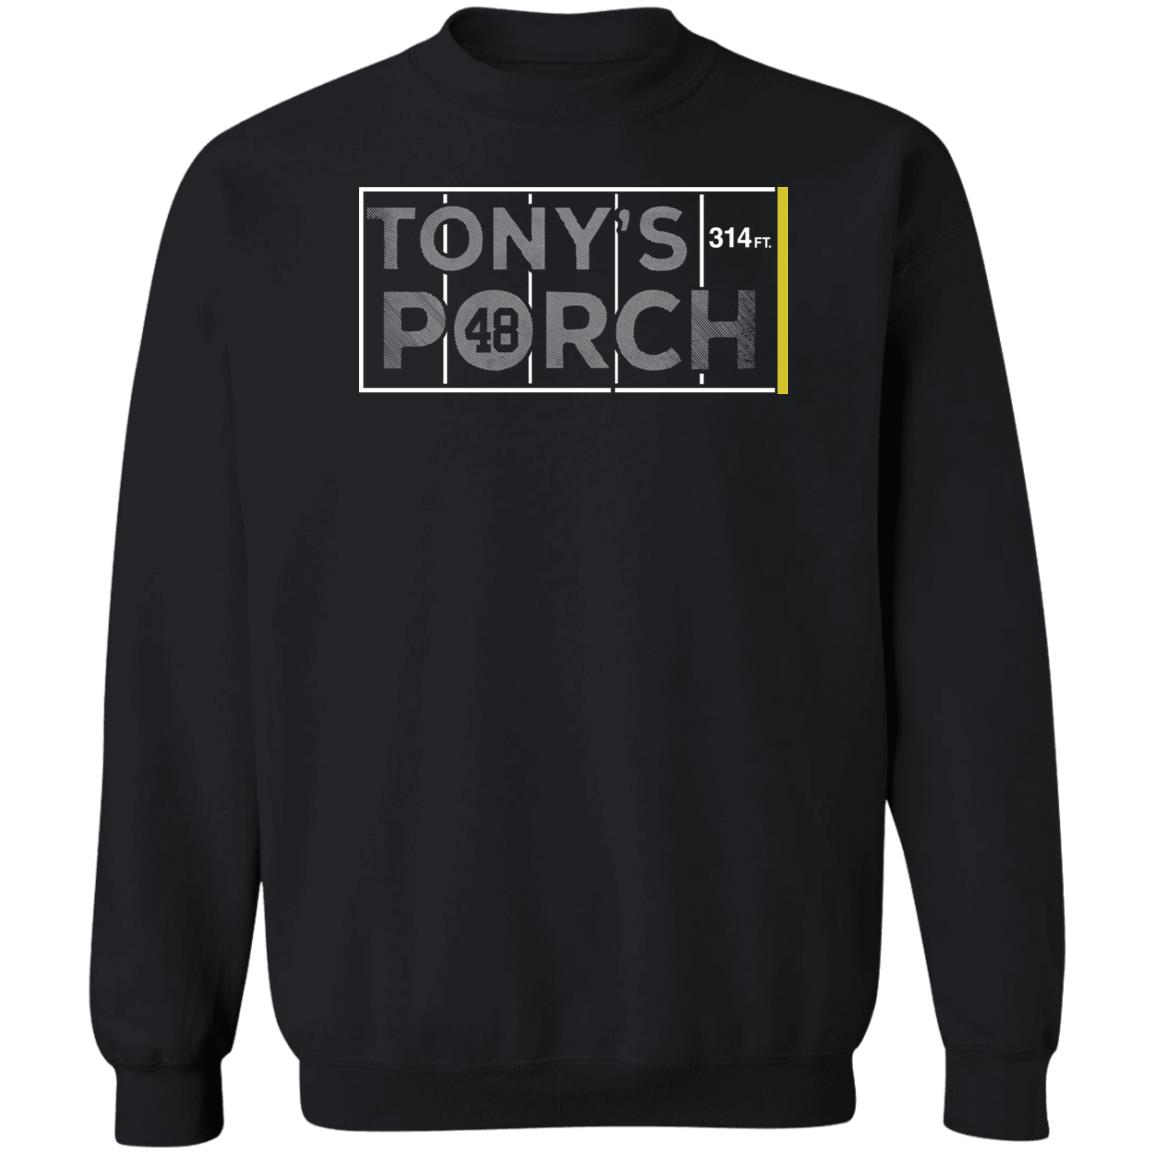 Tony’s Porch 314 Ft Shirt 1